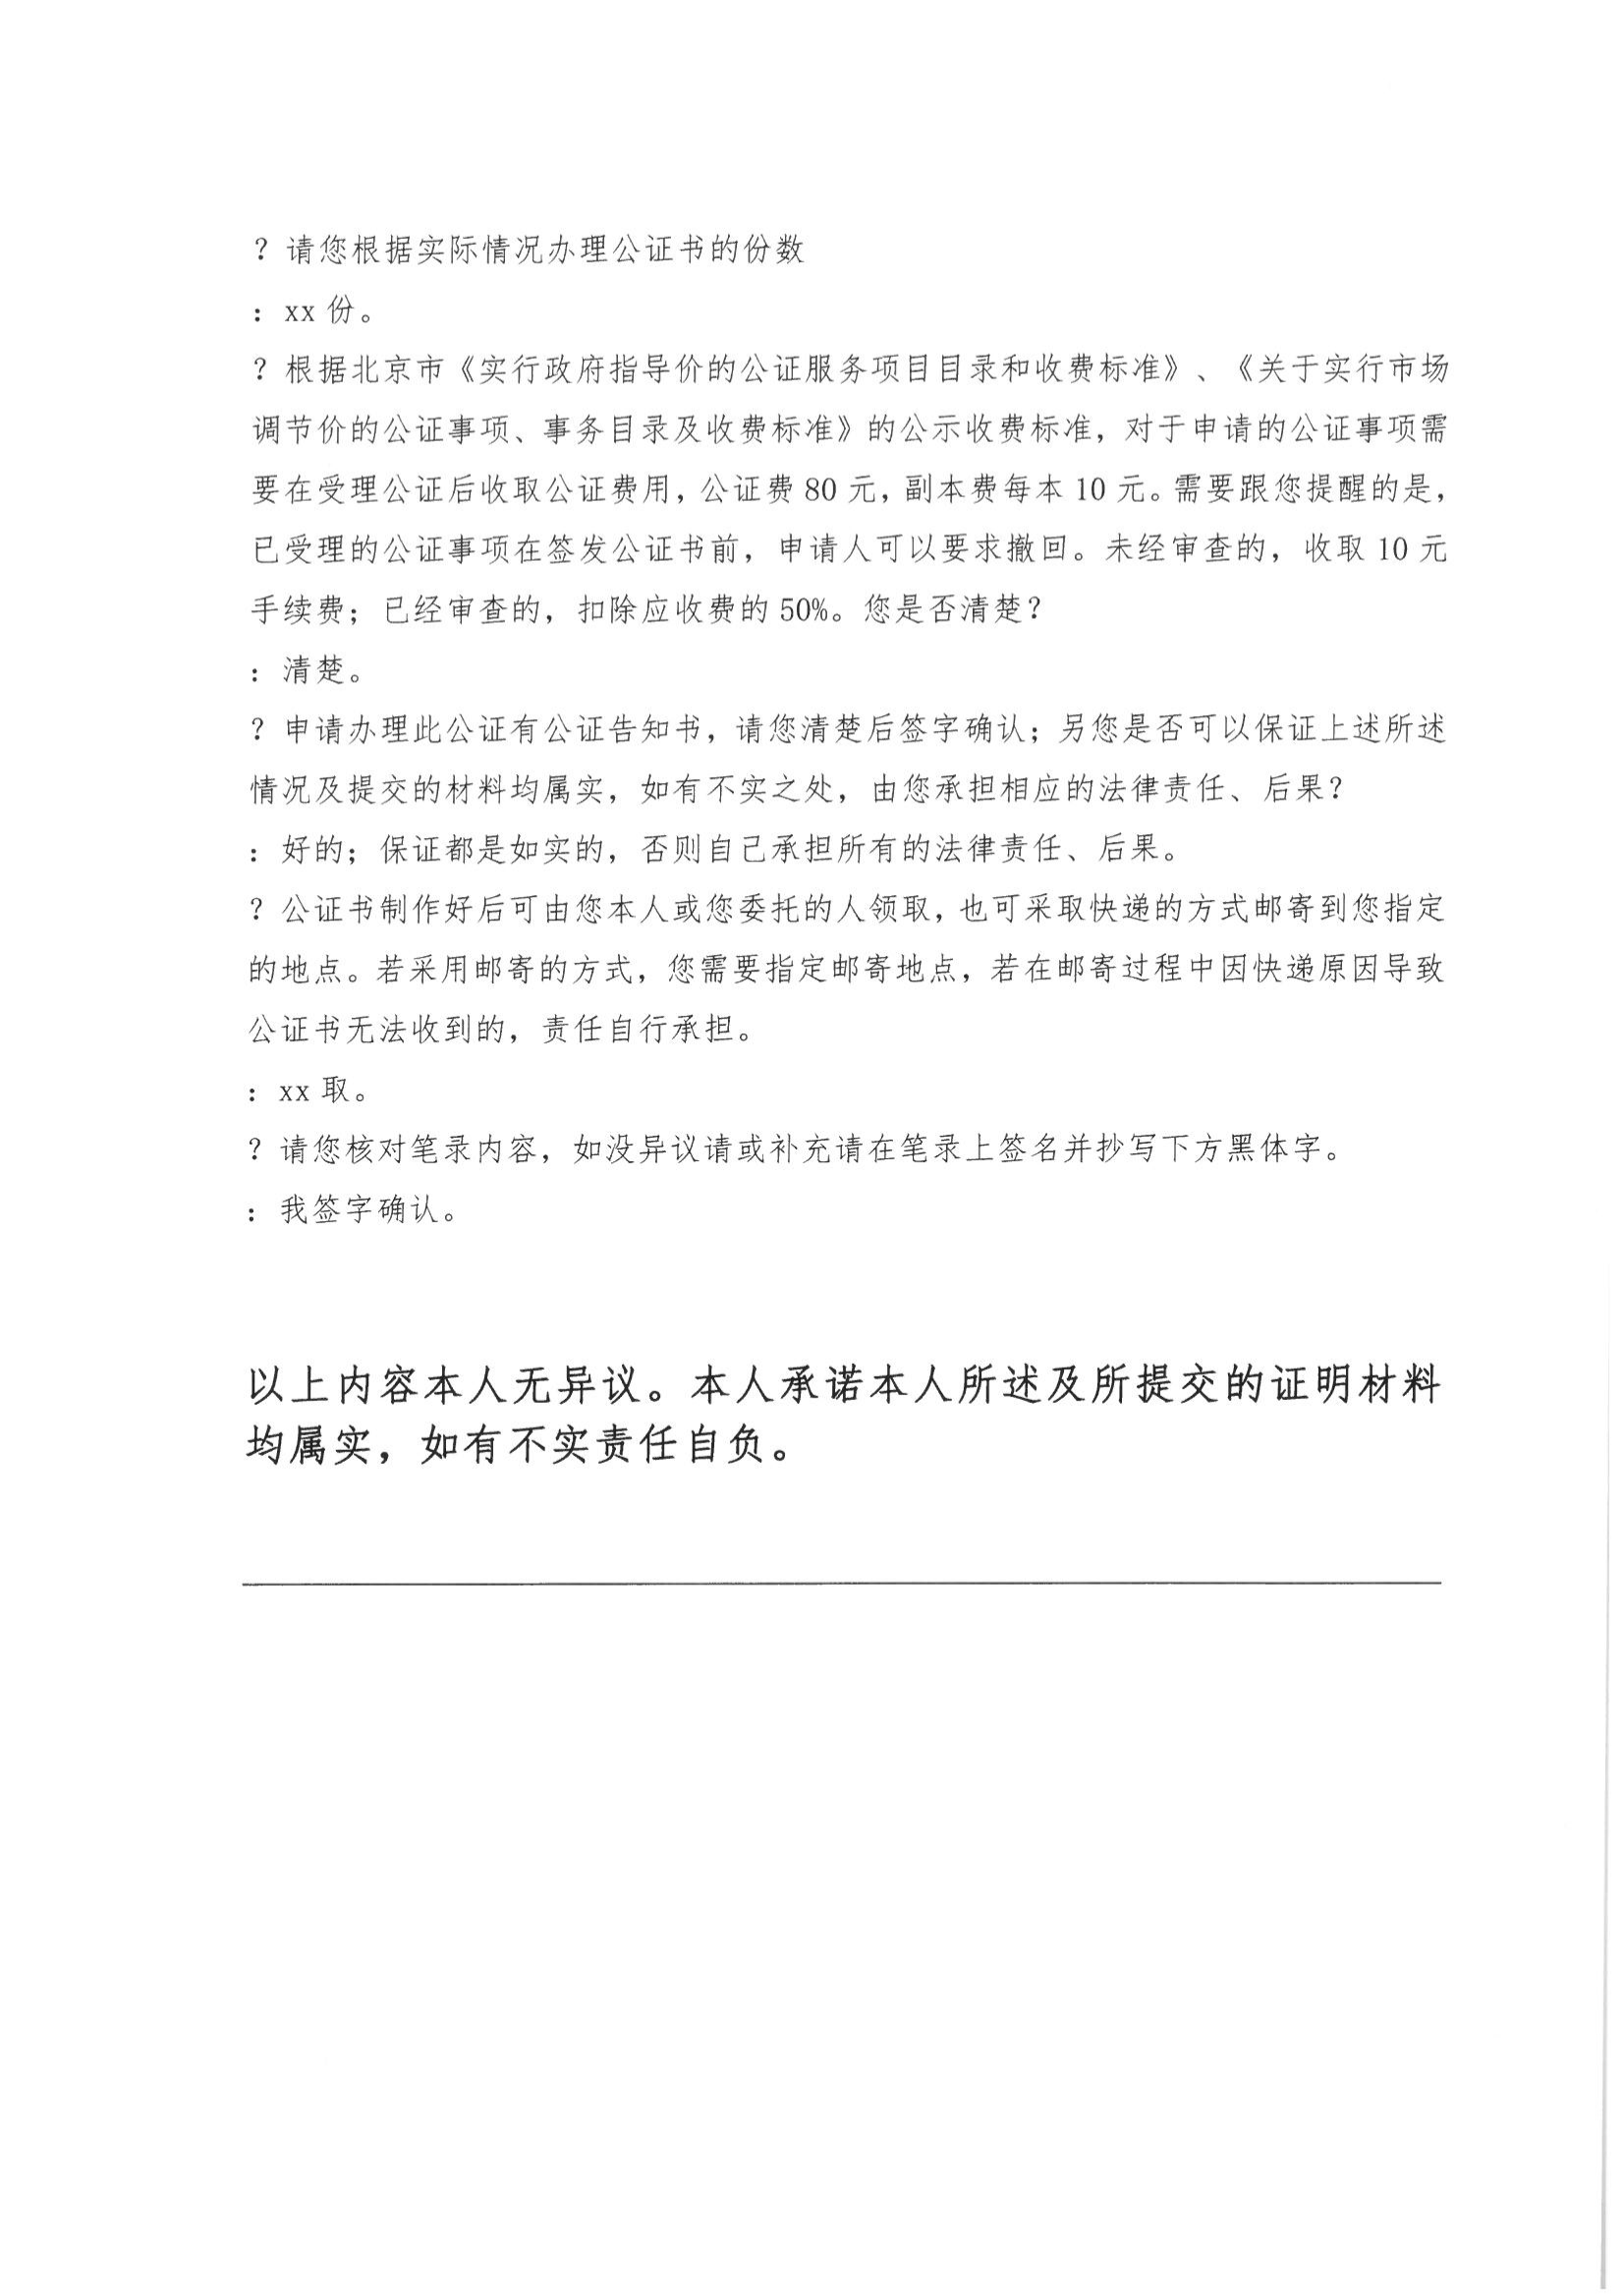 13、北京市公证协会关于印发《北京市公证协会规范执业指引》第13号的通知_07